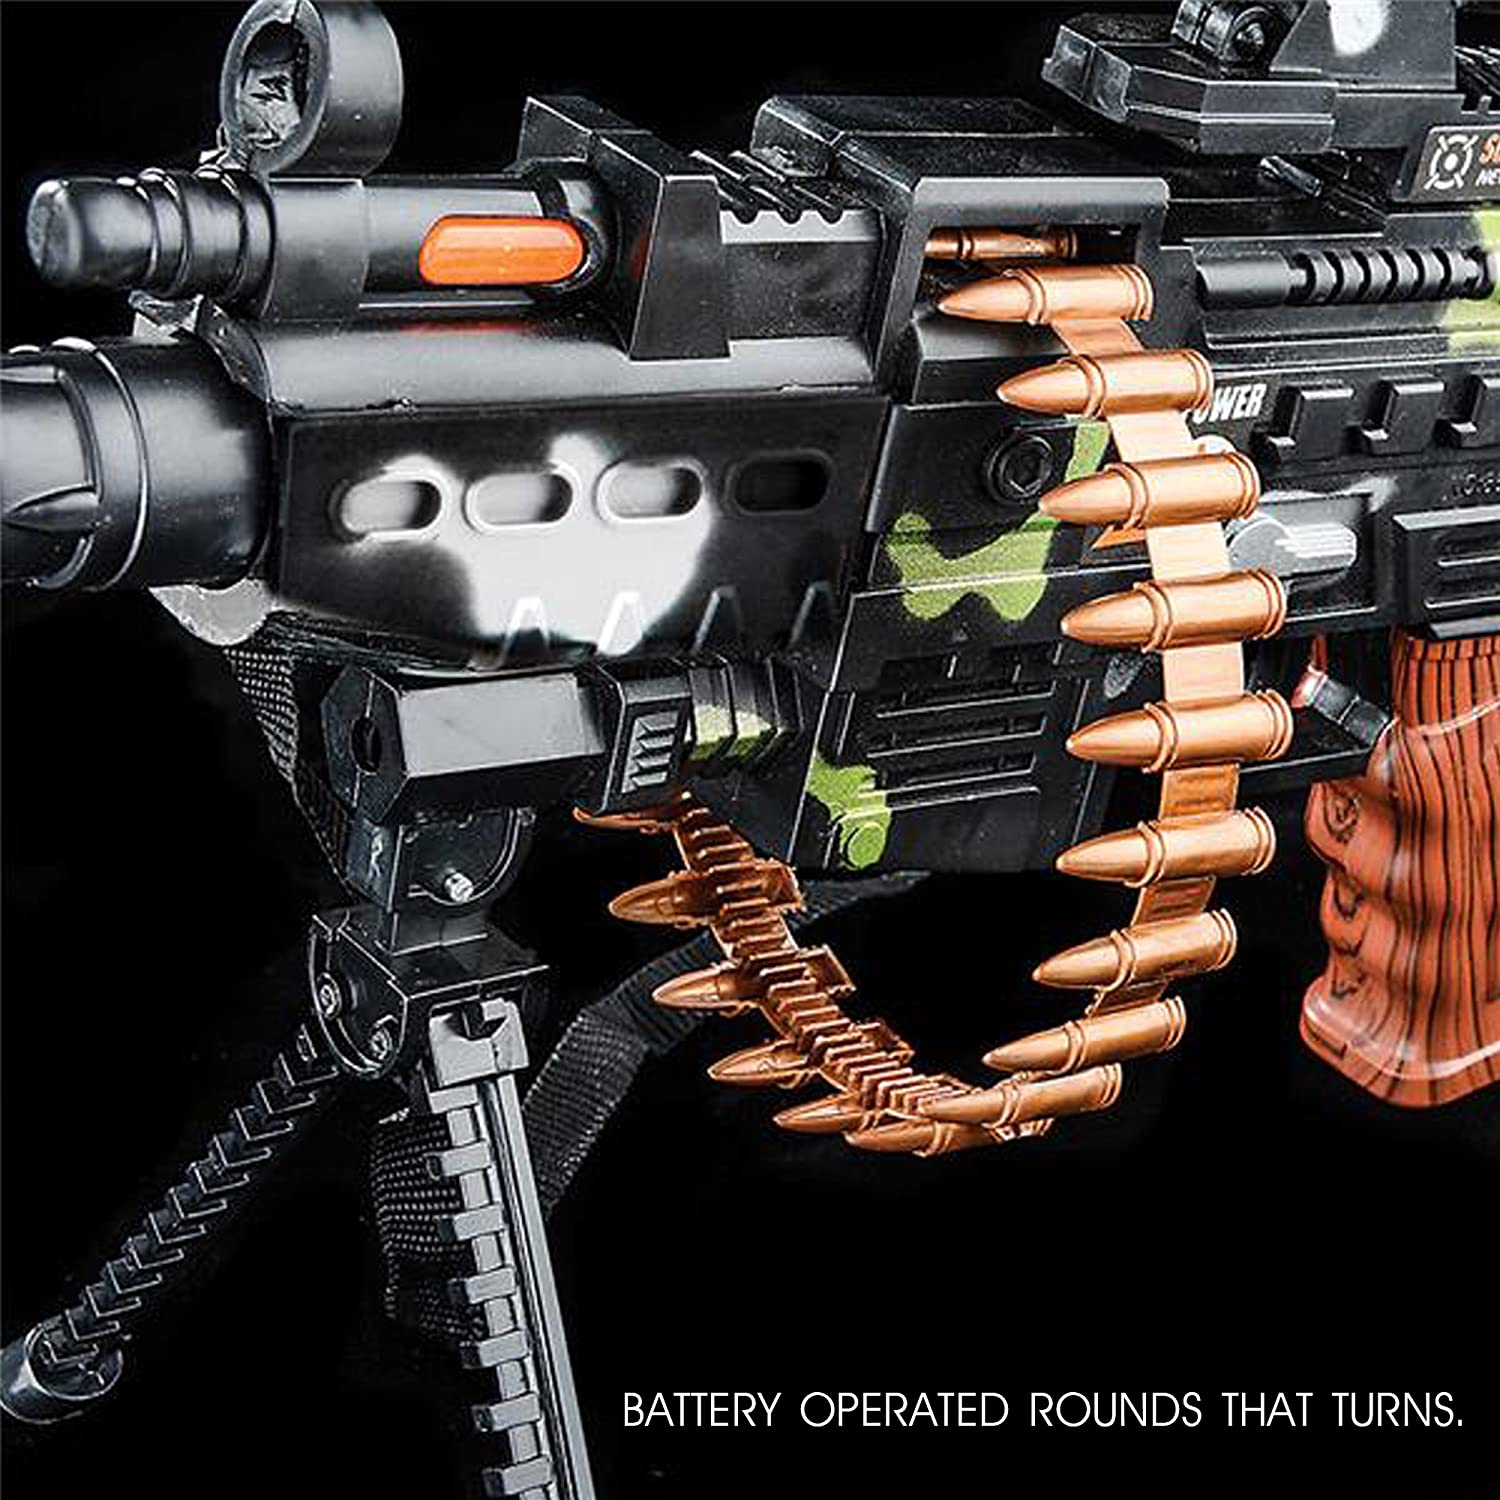 Arma Arminha Brinquedo Metralhadora com Som e Luz à pilha - Lynx